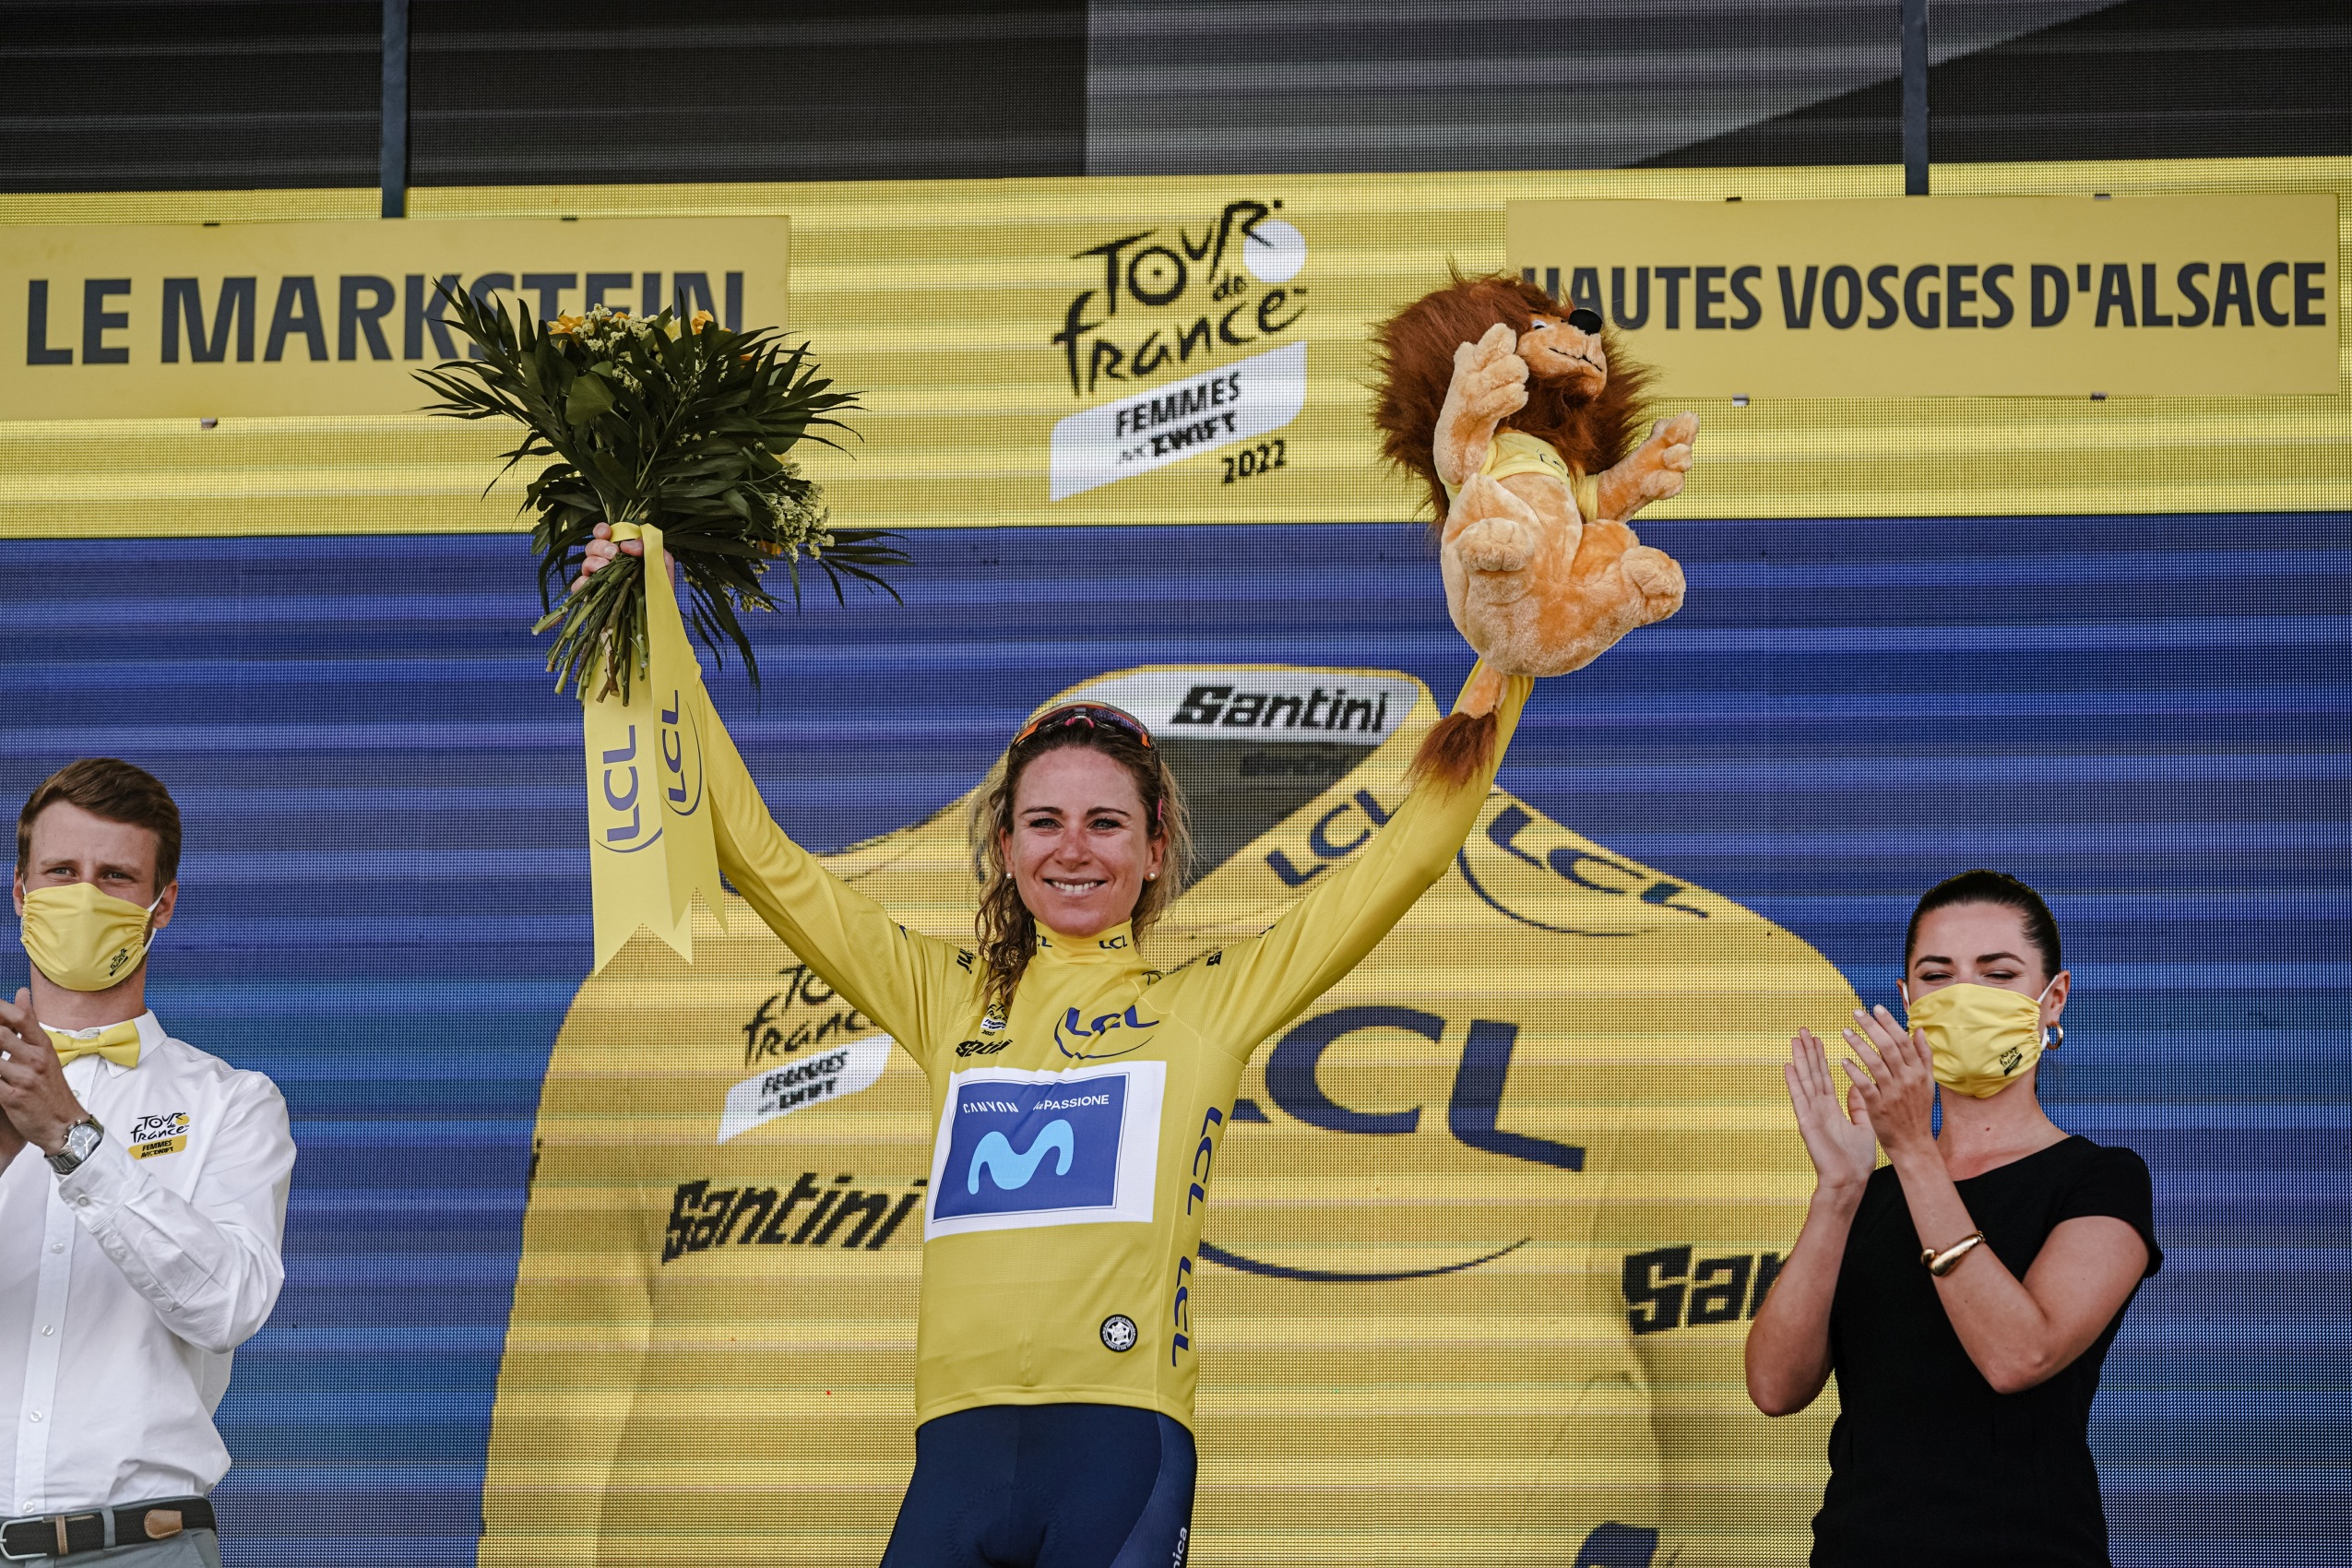 Tour de France Femmes 2022. Annemiek van Vleuten: “atakowanie to mój styl”